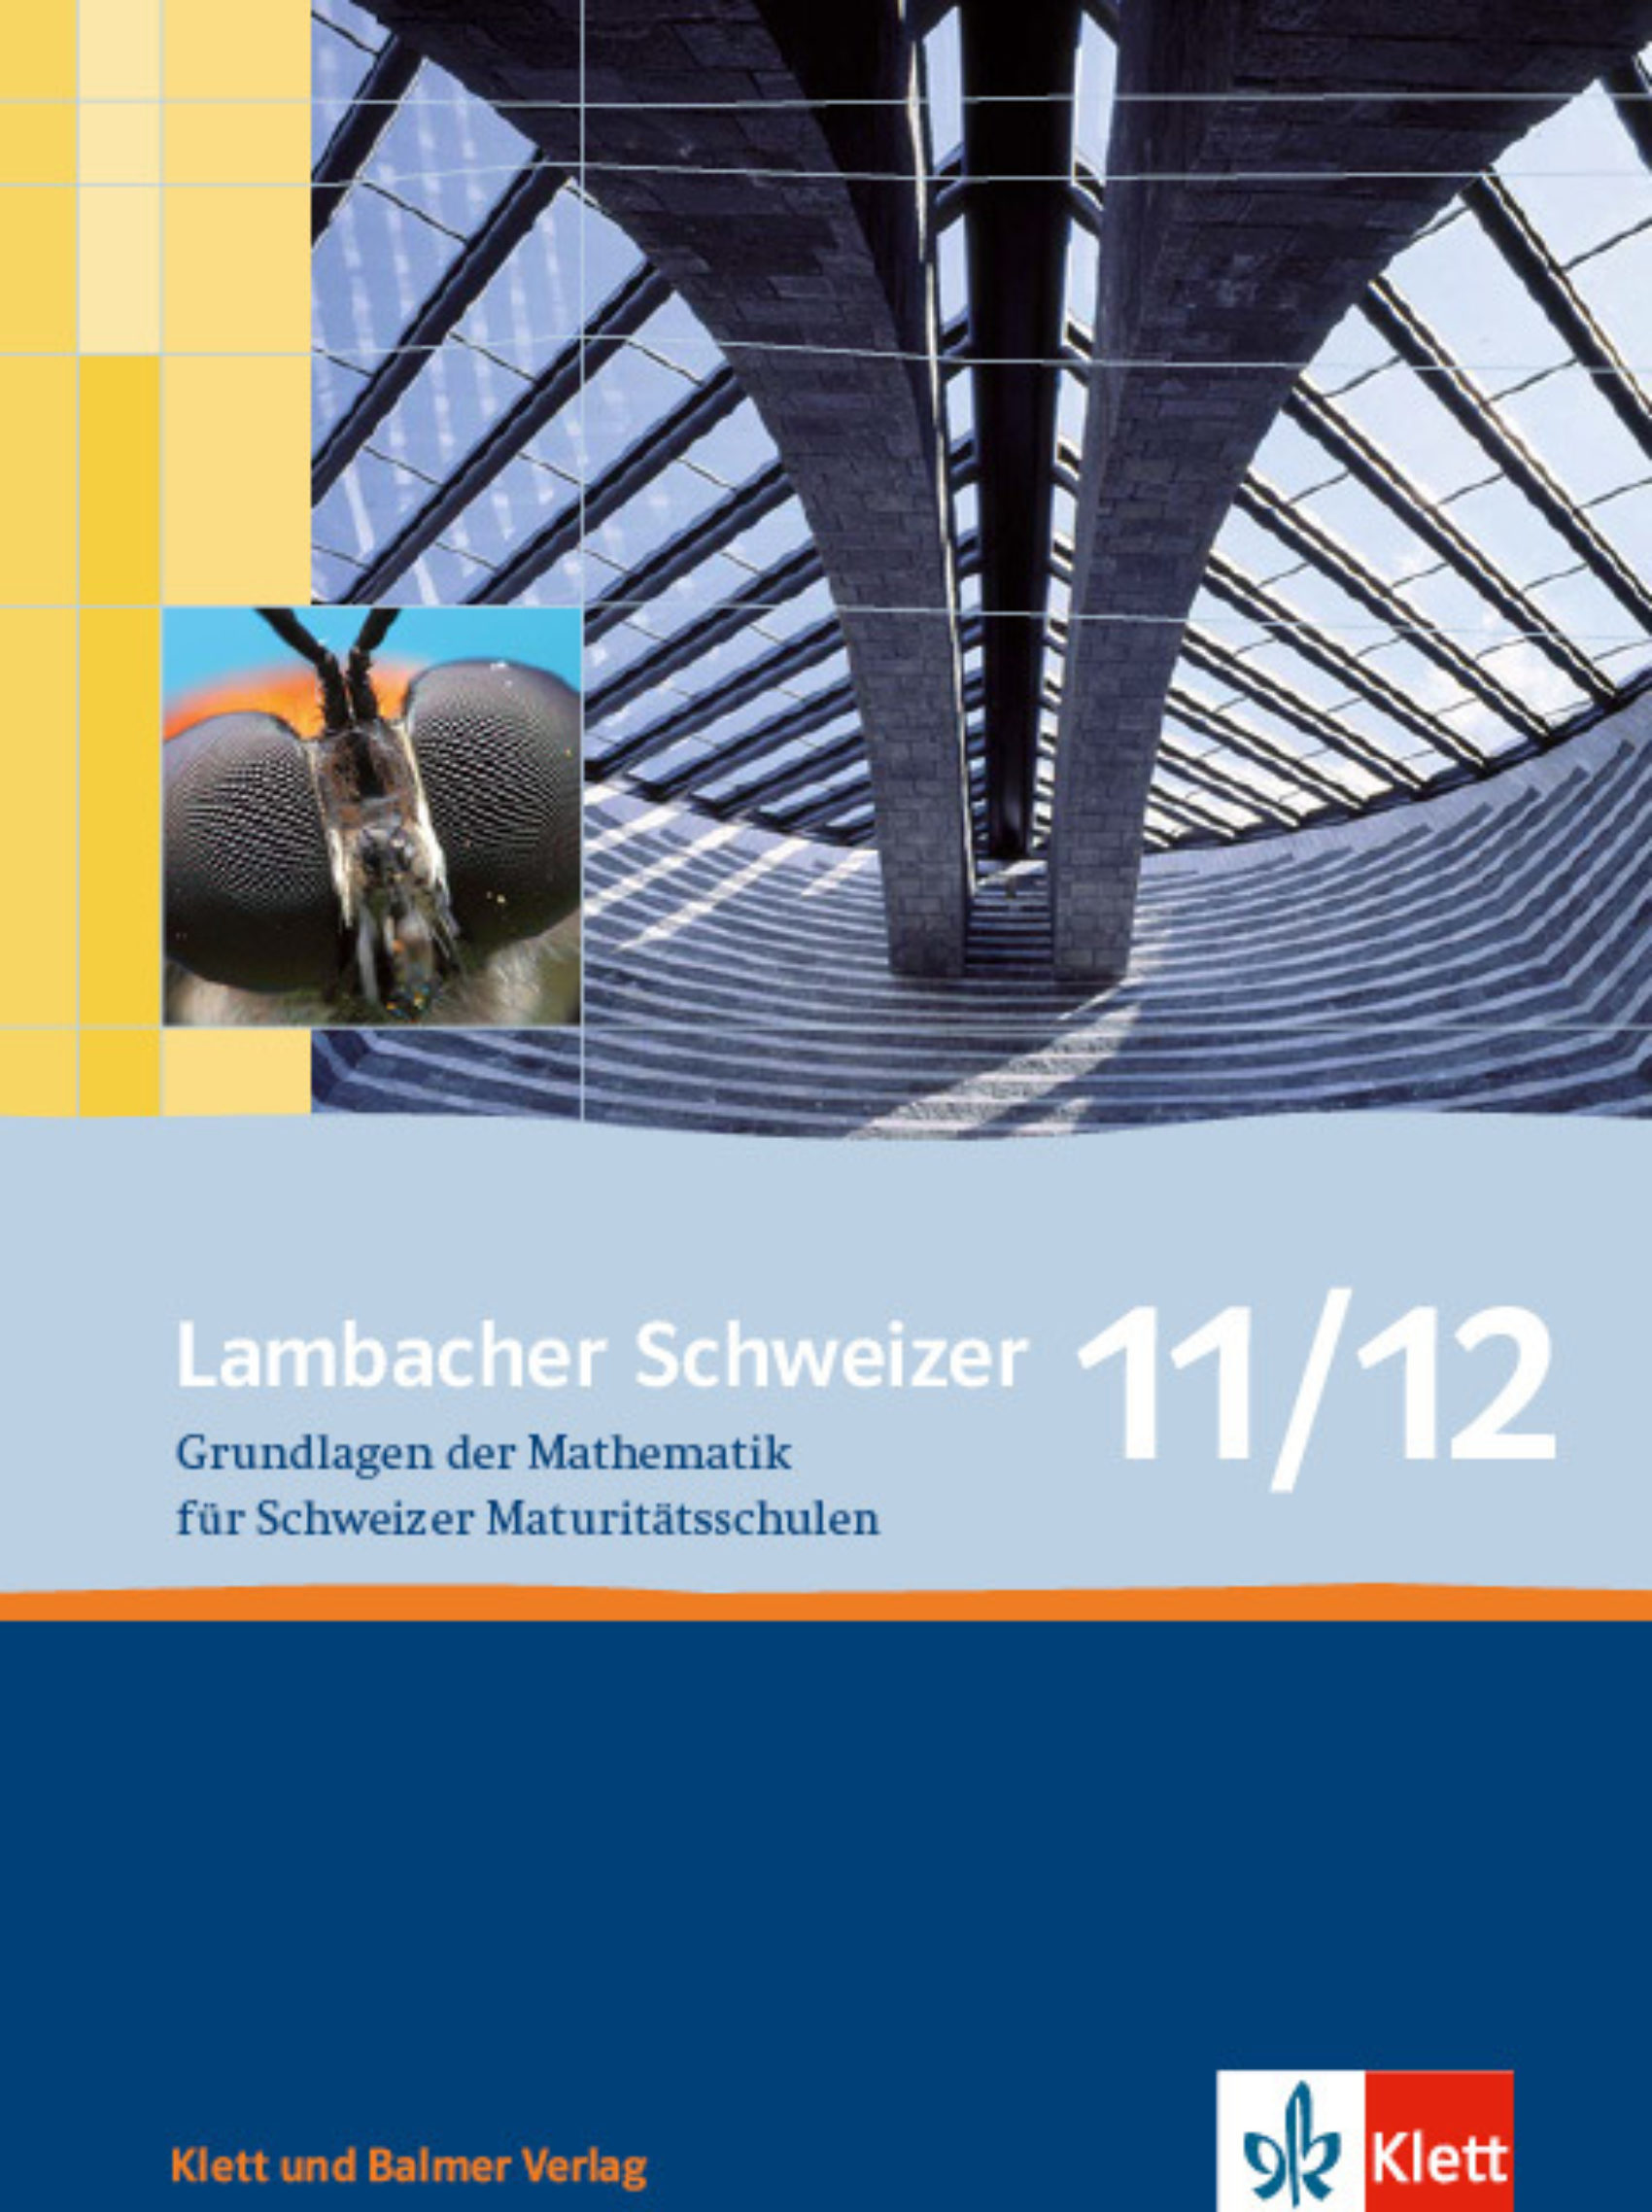 Schulbuch lambacher schweizer 11 12 978 3 264 83983 8 klett und balmer